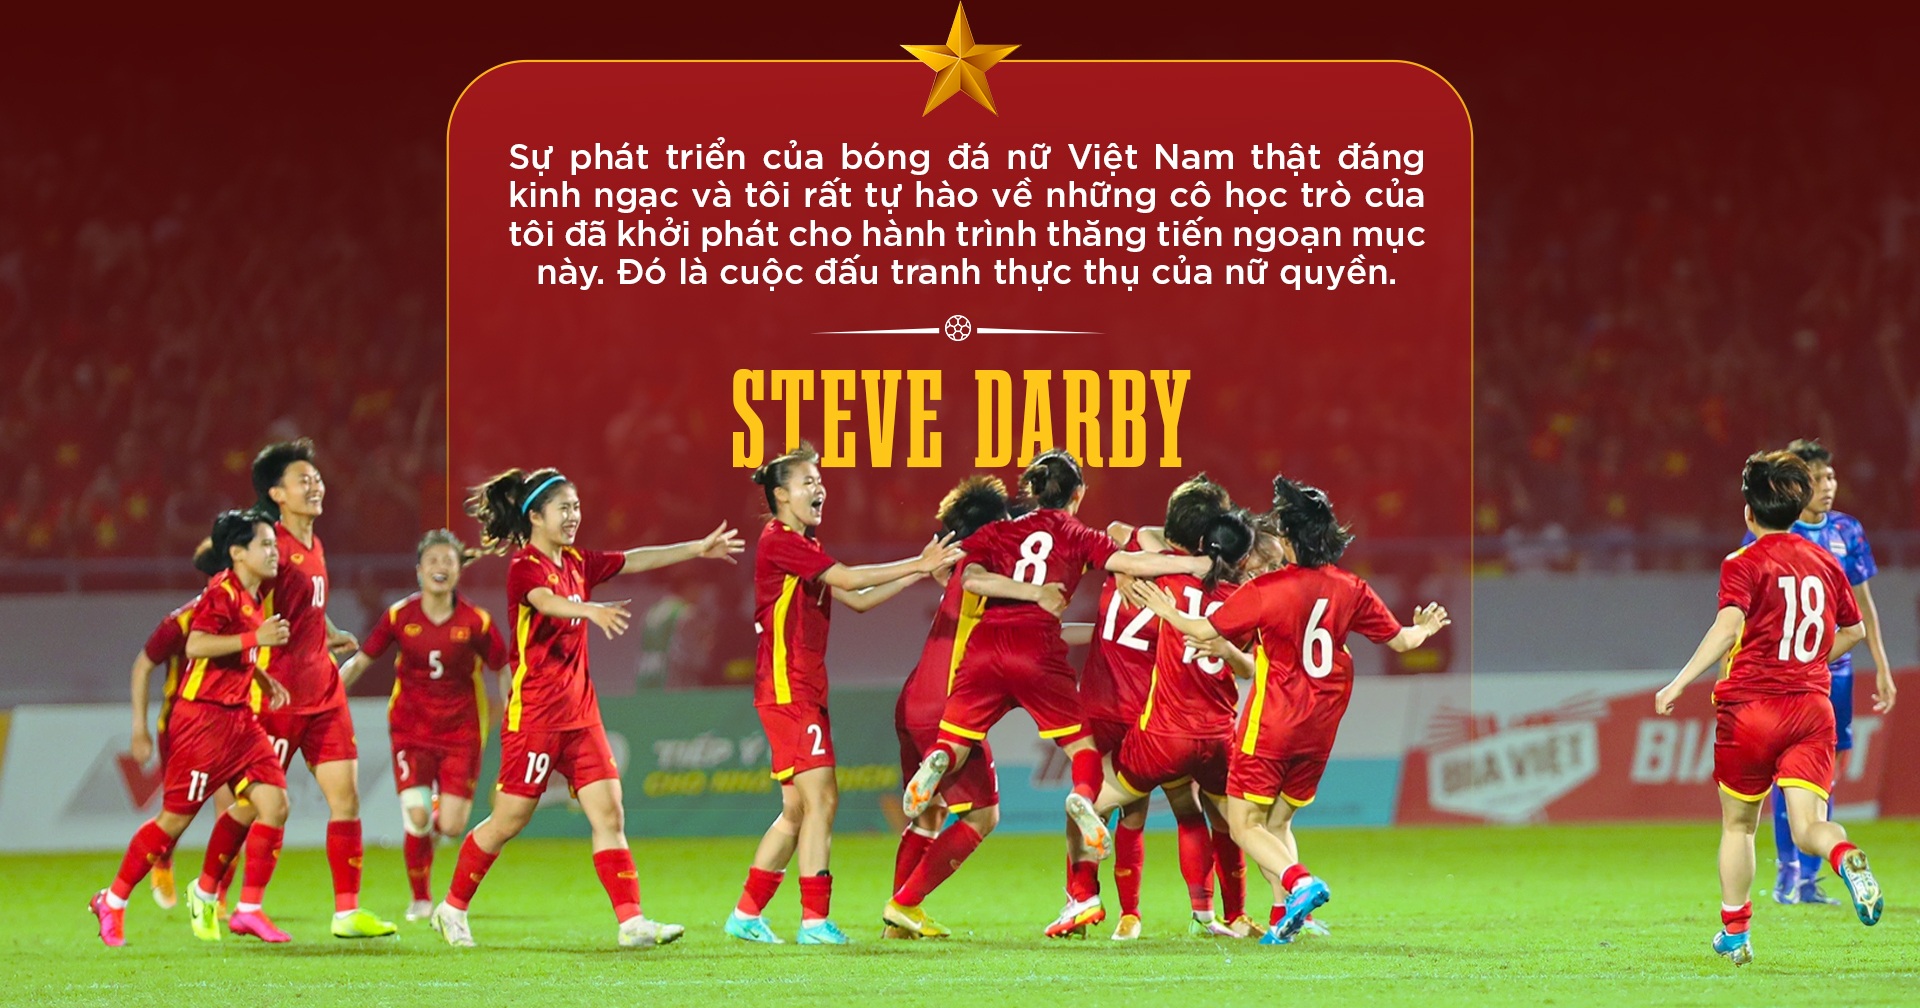 View - Steve Darby: Ký ức hào hùng về SEA Games 21 và tầm nhìn World Cup | Báo Dân trí